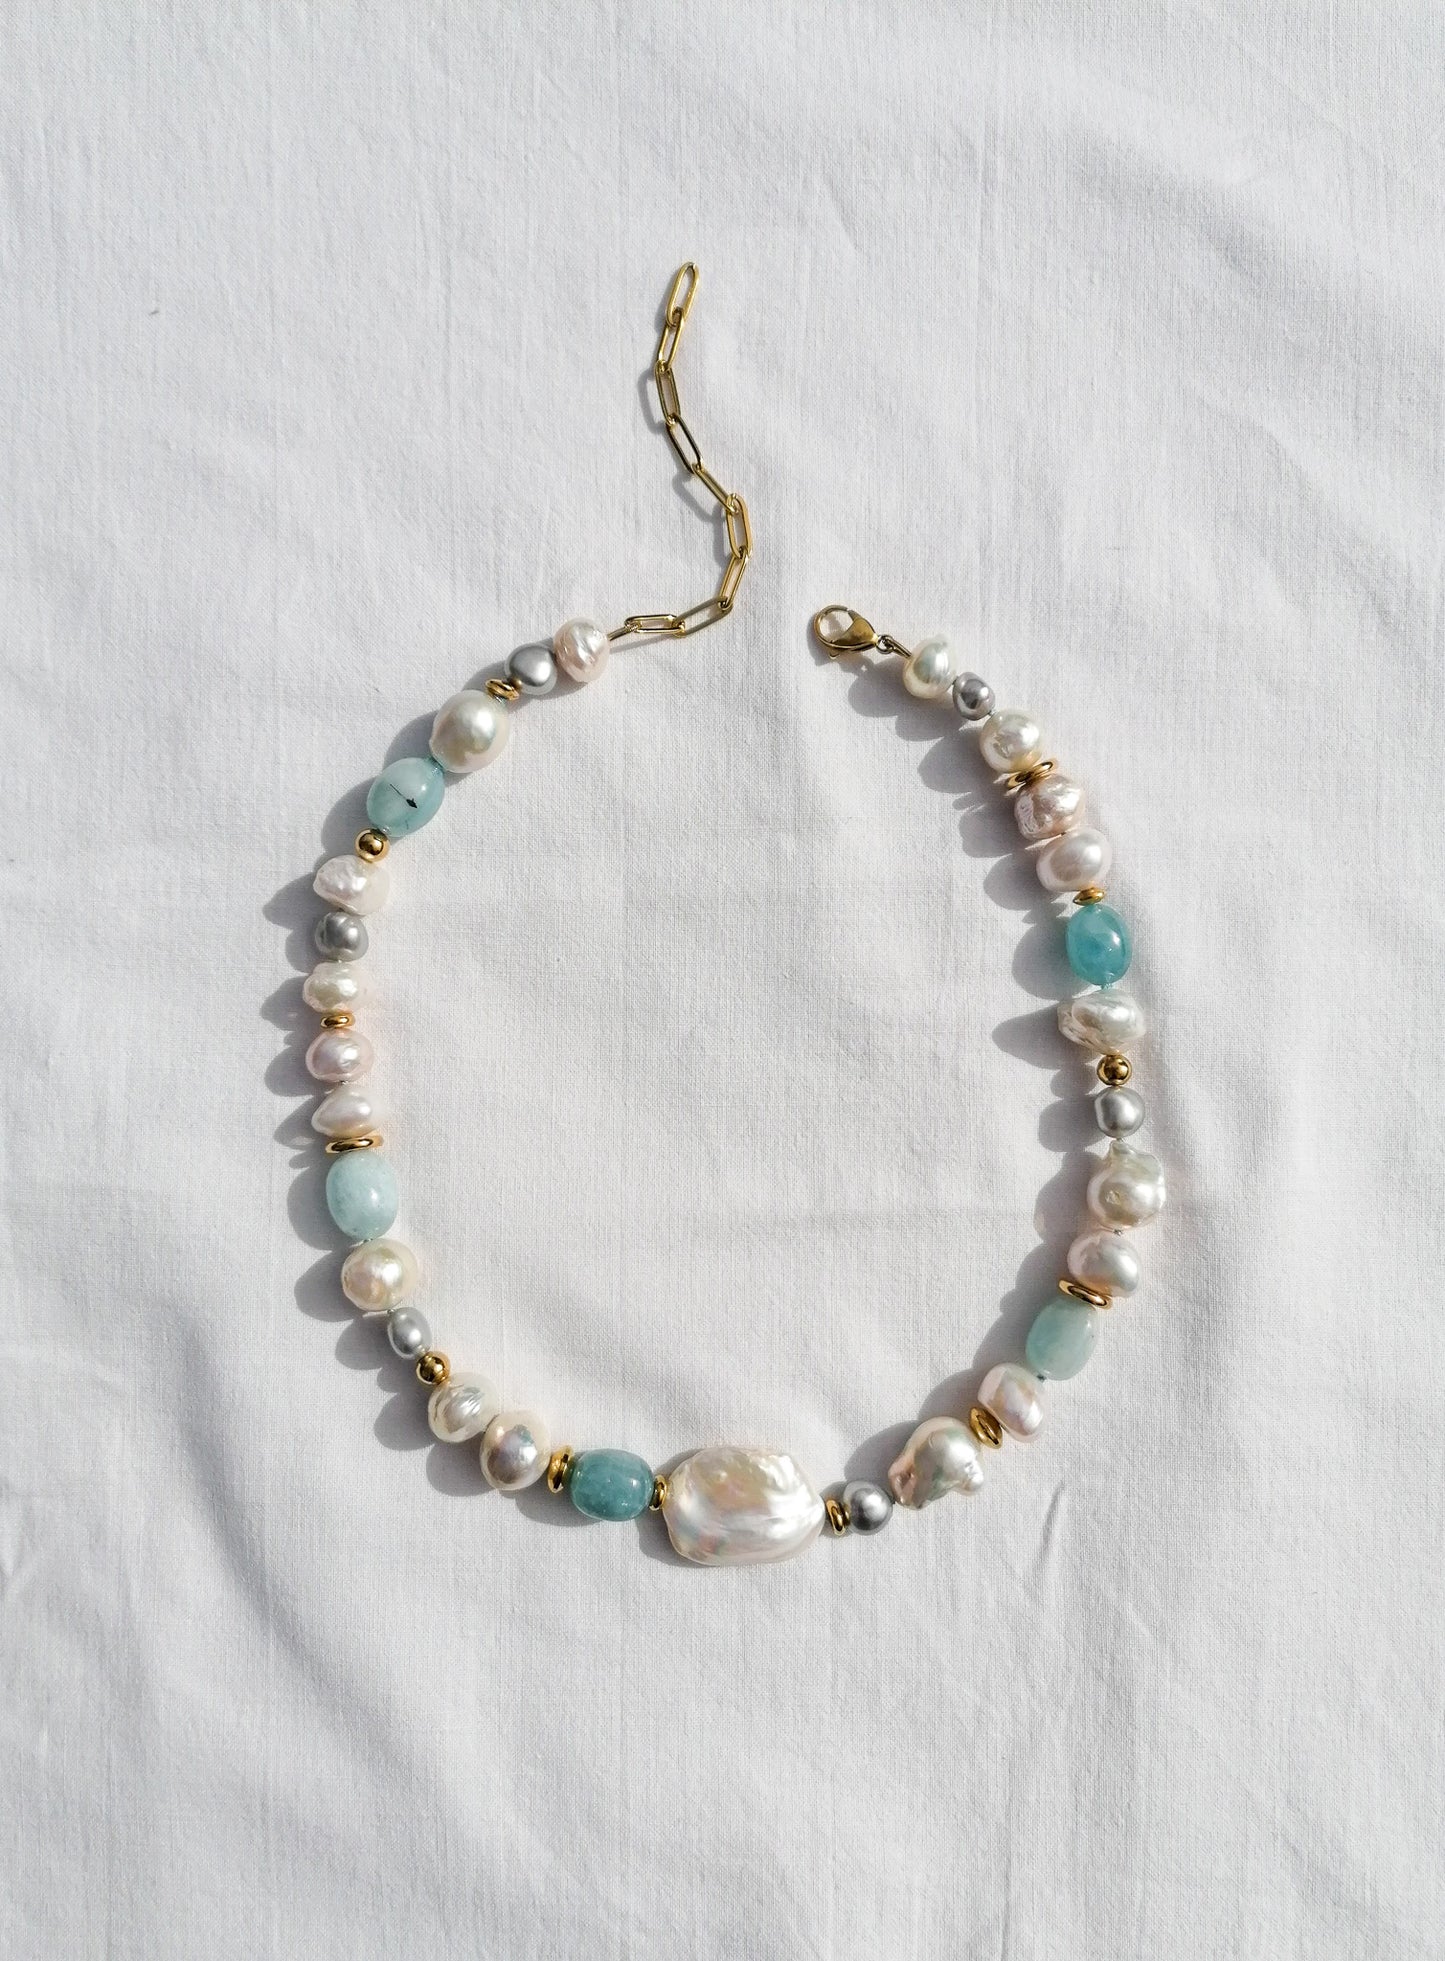 Aquamarine & pearl necklace